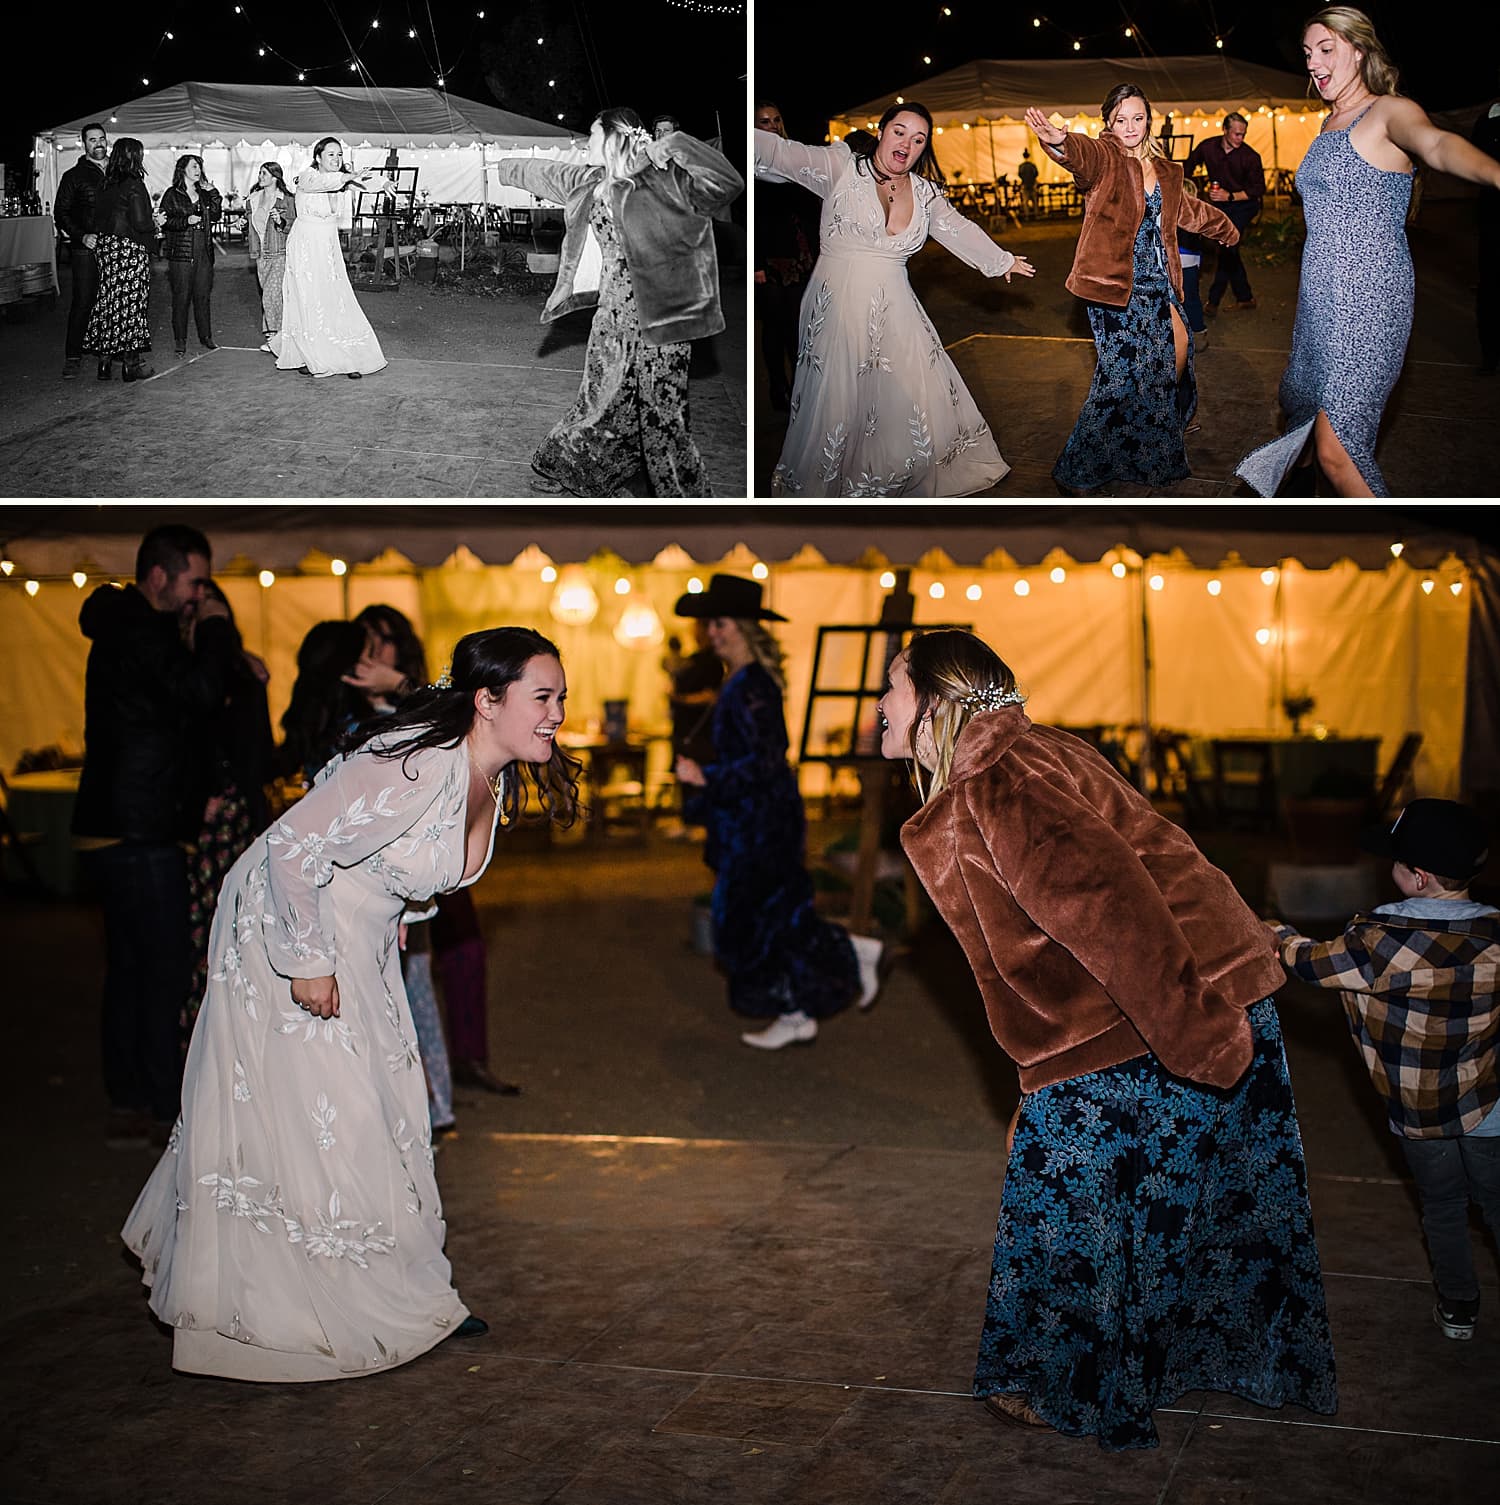 Sisters dancing at a wedding